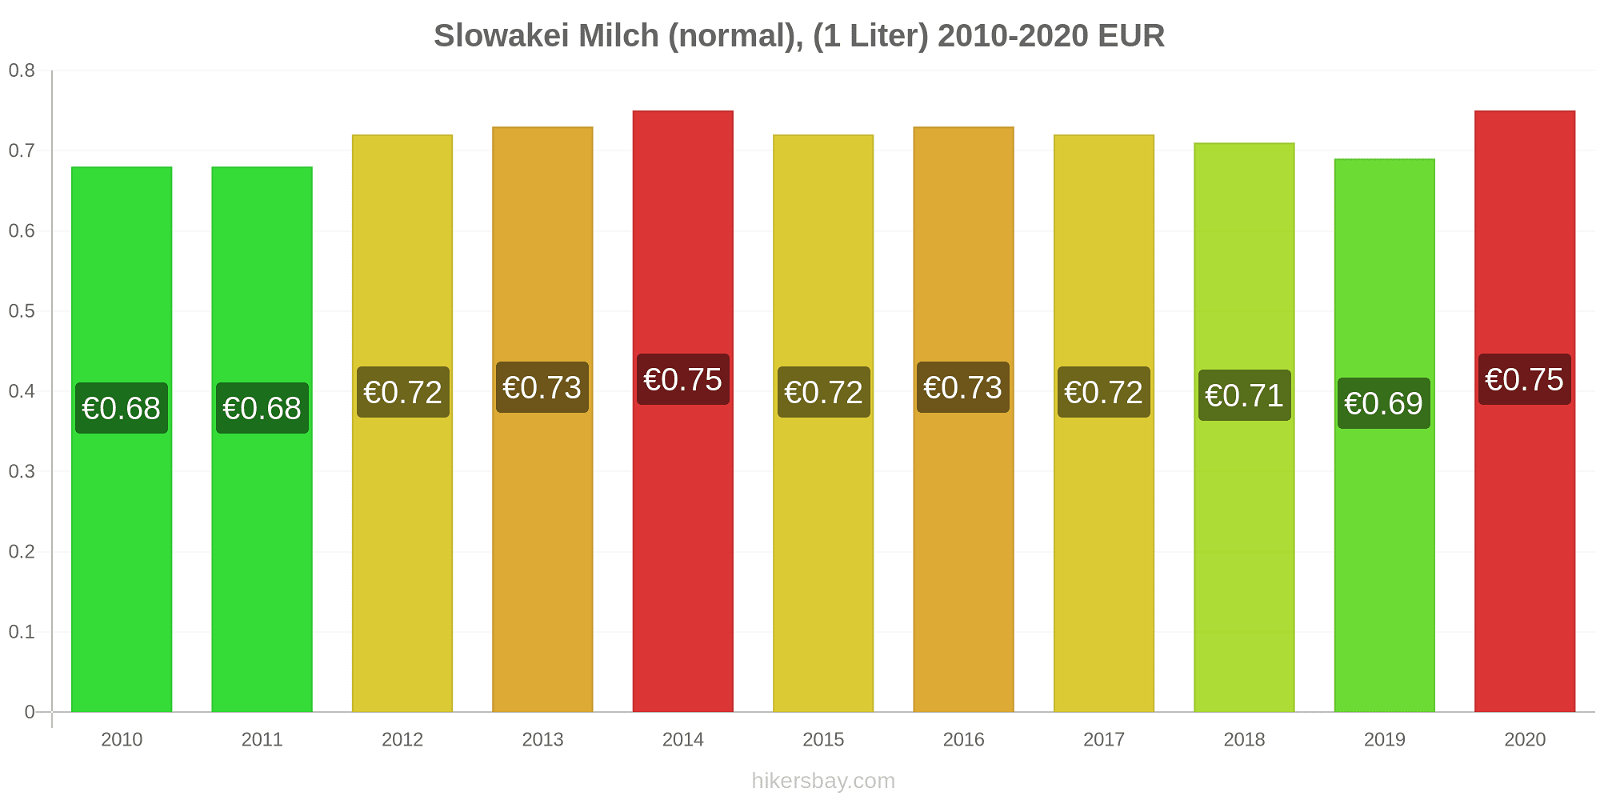 Slowakei Preisänderungen (Regulär), Milch (1 Liter) hikersbay.com